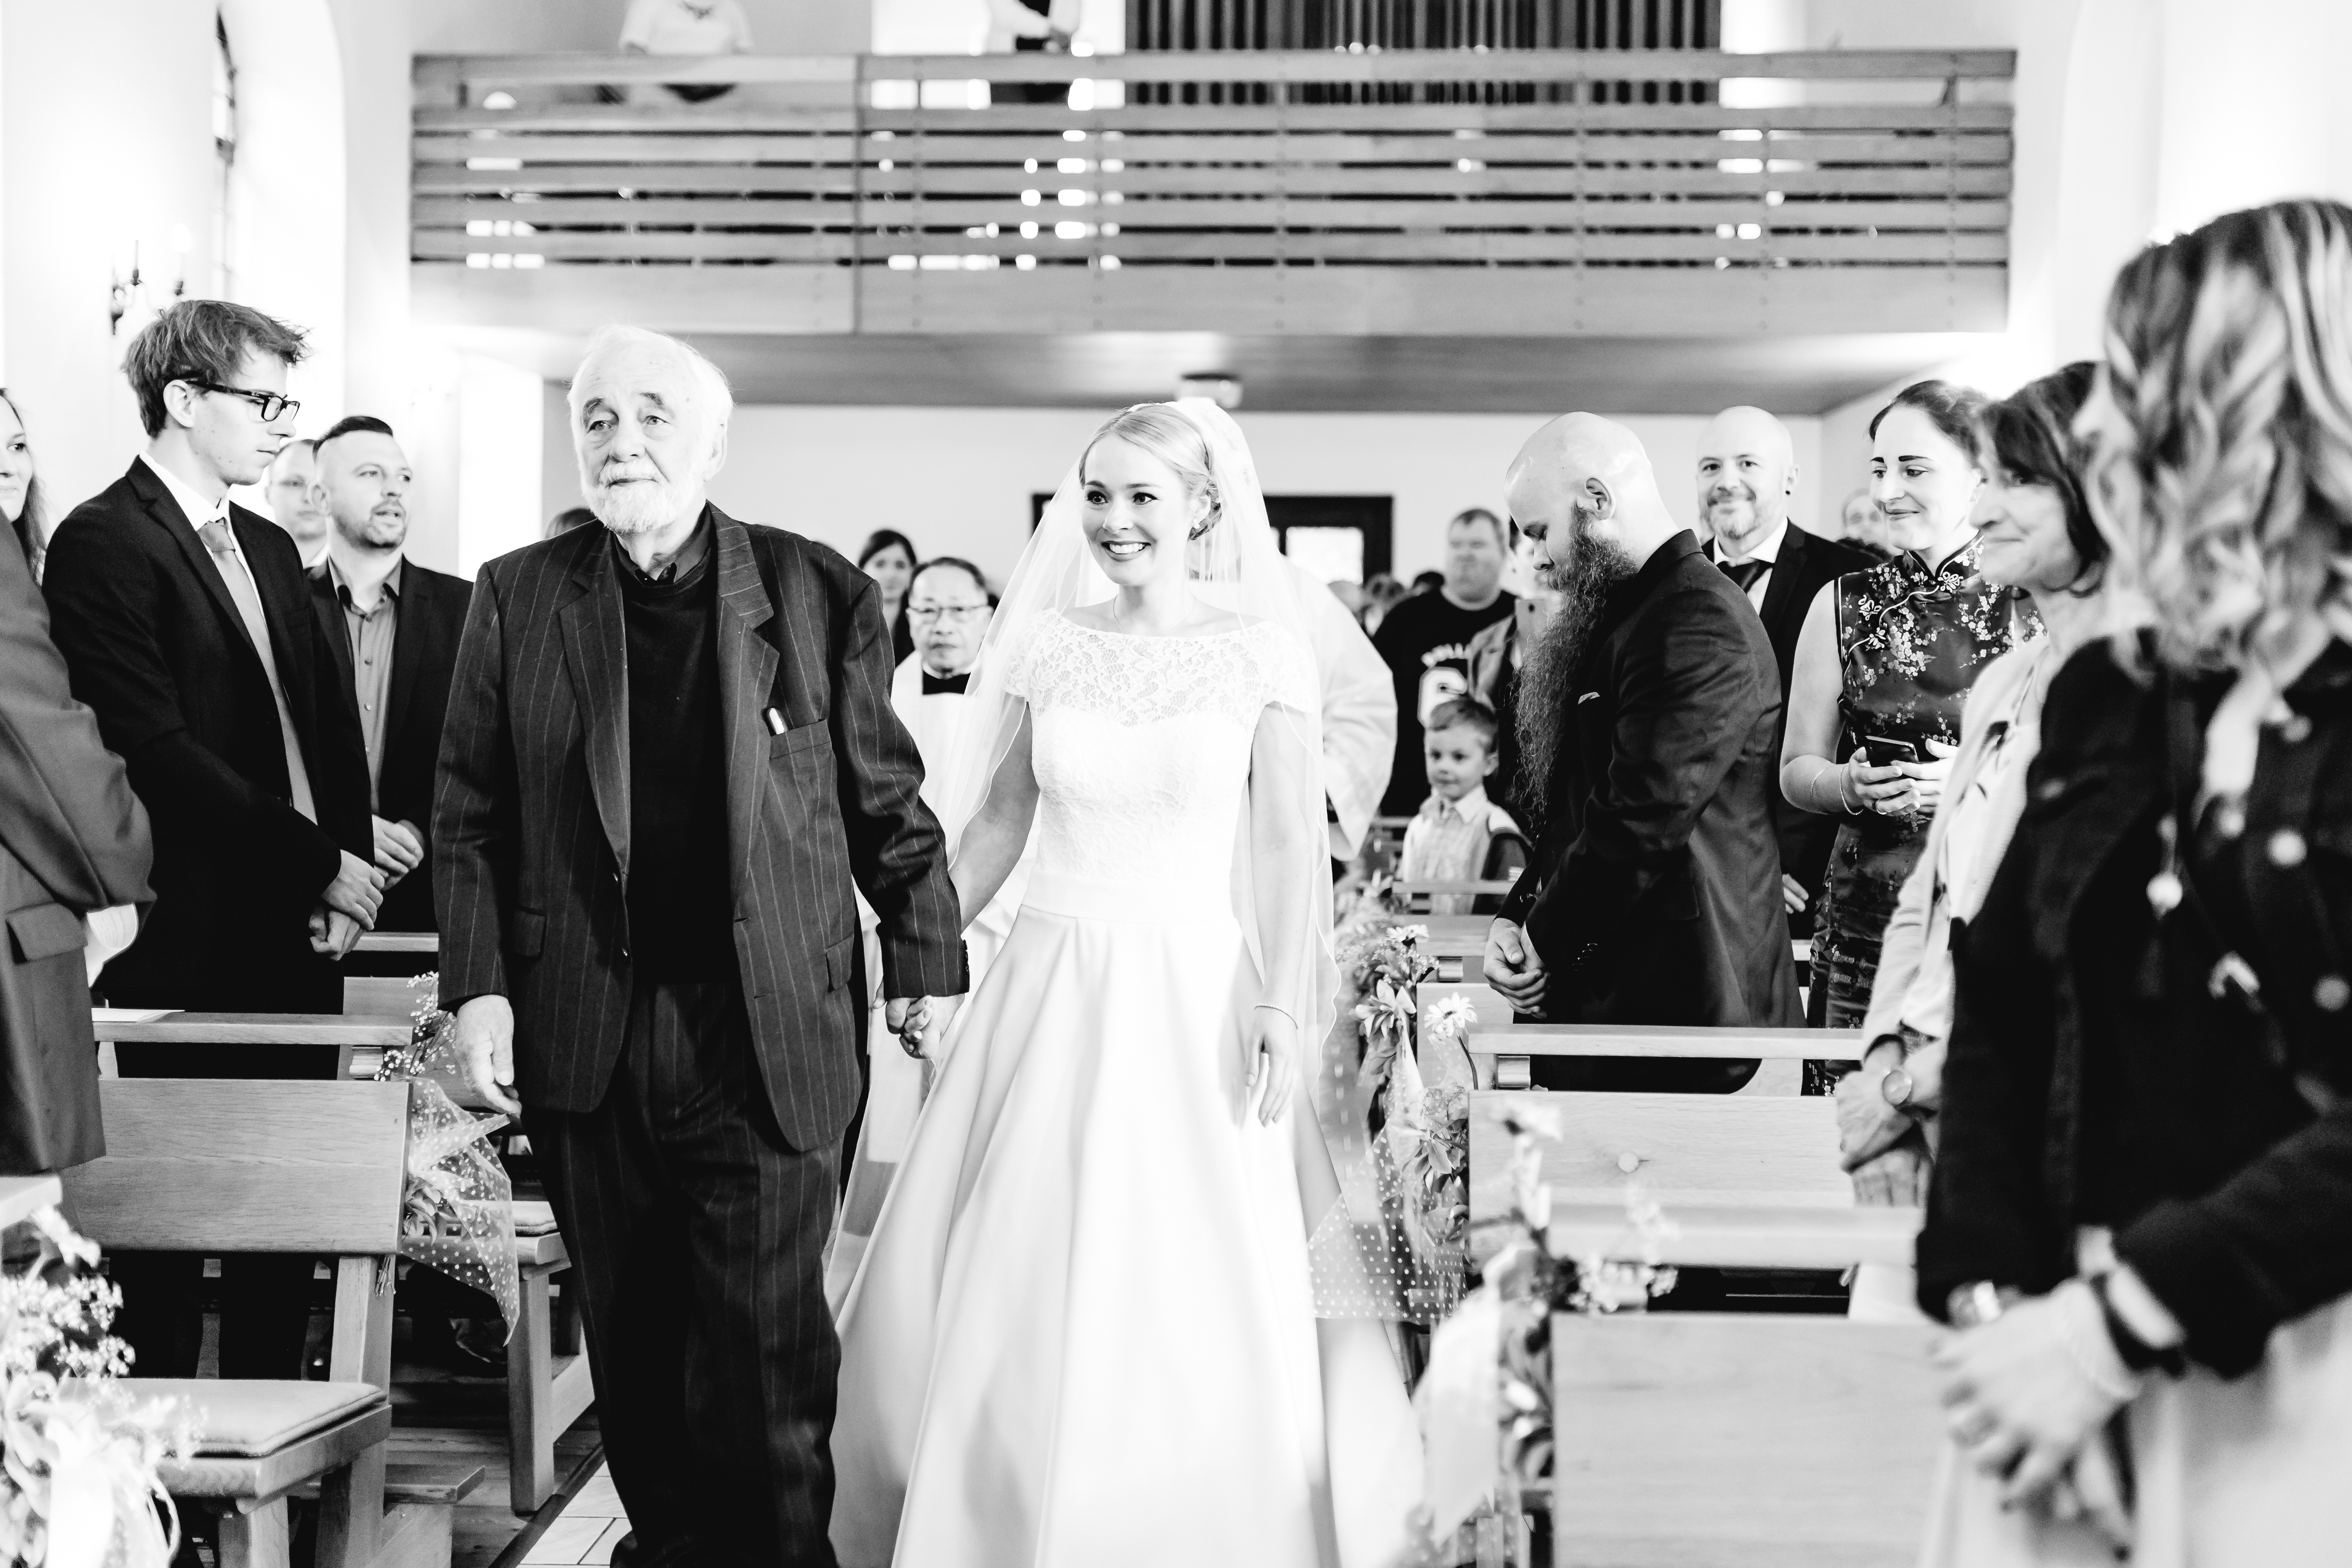 Hochzeitsfotograf Saarland - Fotograf Kai Kreutzer 41900135 - Saarbrücken, Saarlouis, Luxemburg Hochzeitsreportage